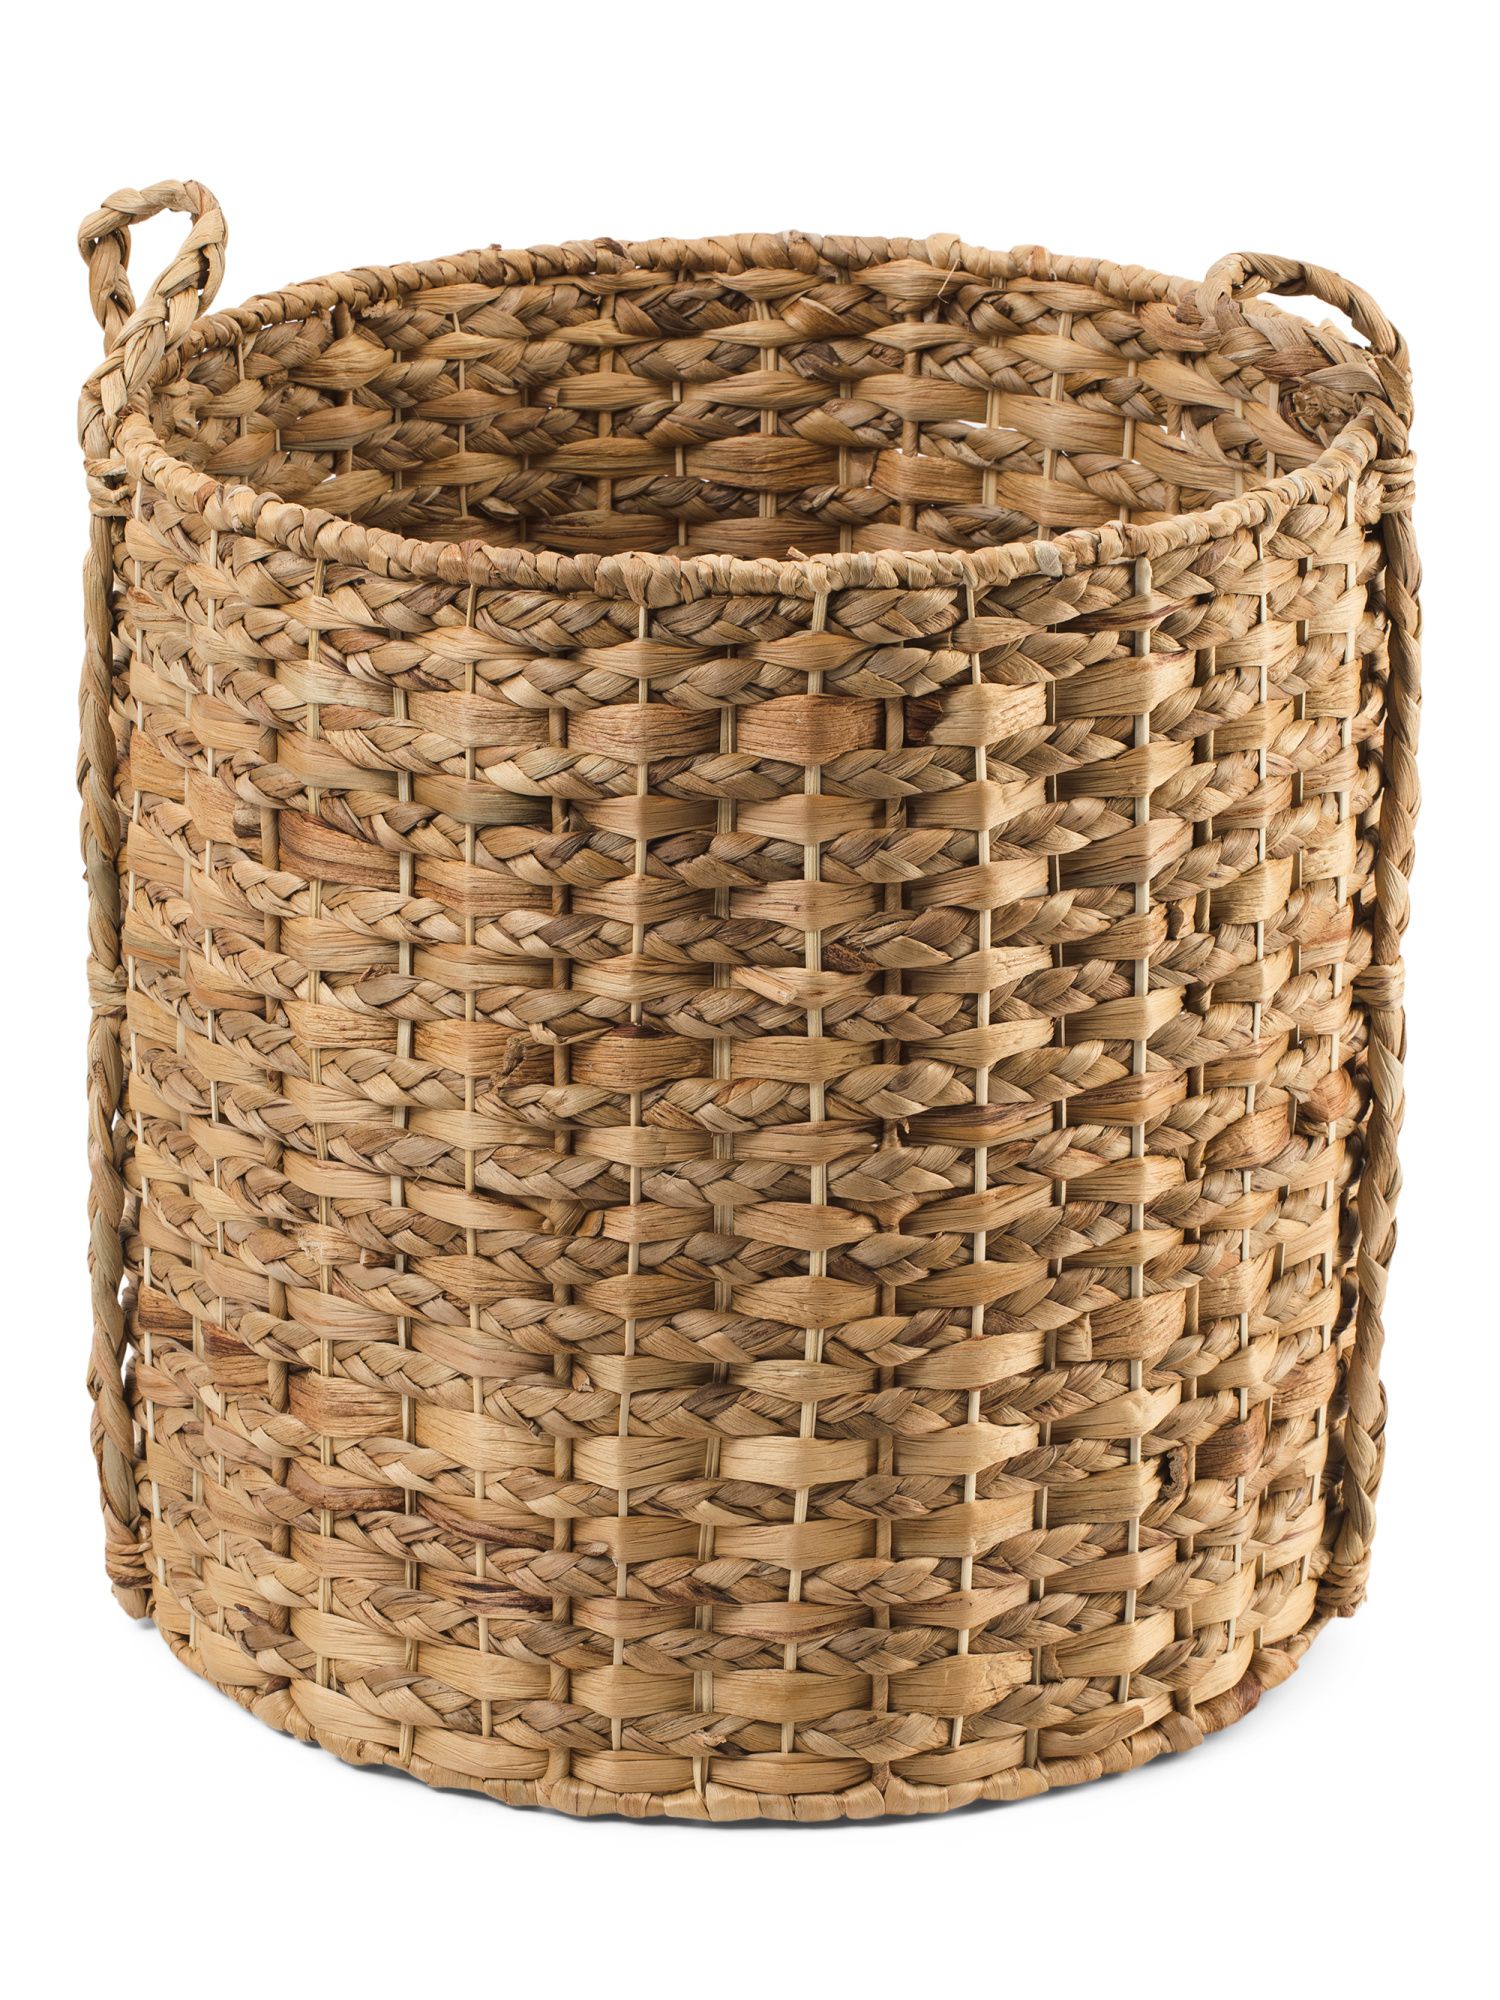 Medium Round Storage Basket | TJ Maxx